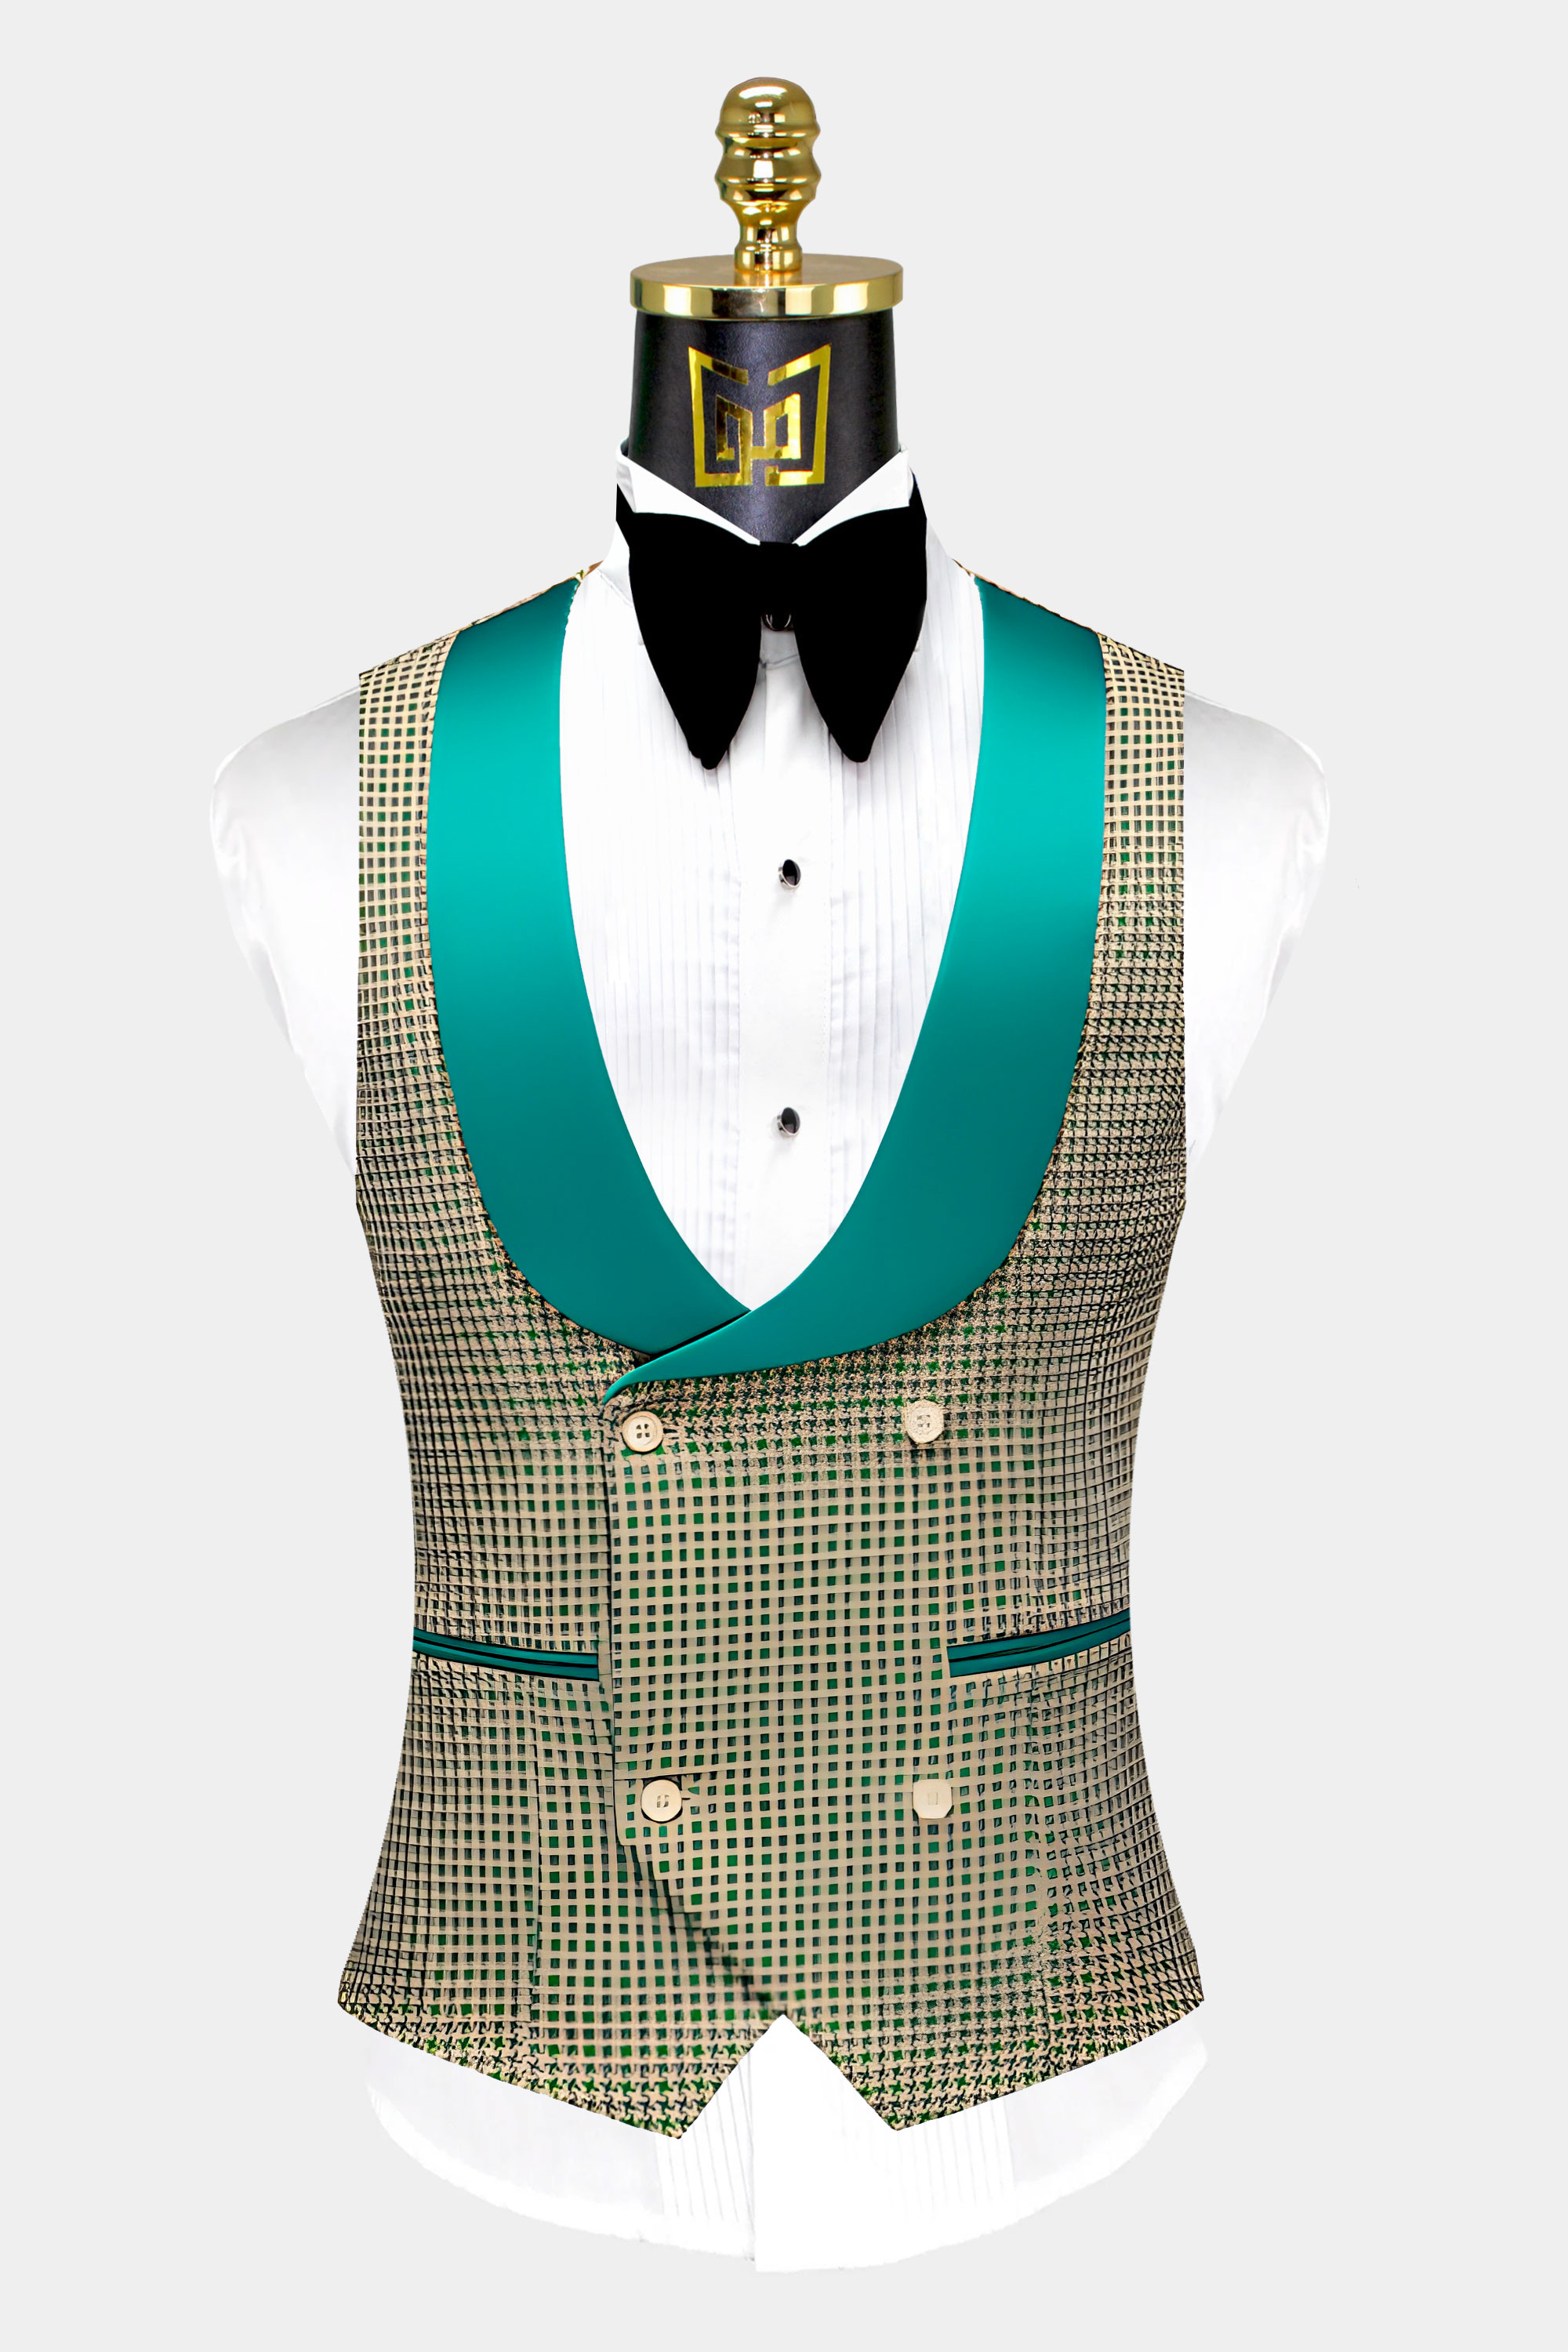 Green-and-Khaki-Houndstooth-Tuxedo-Vest-from-Gentlemansguru.com